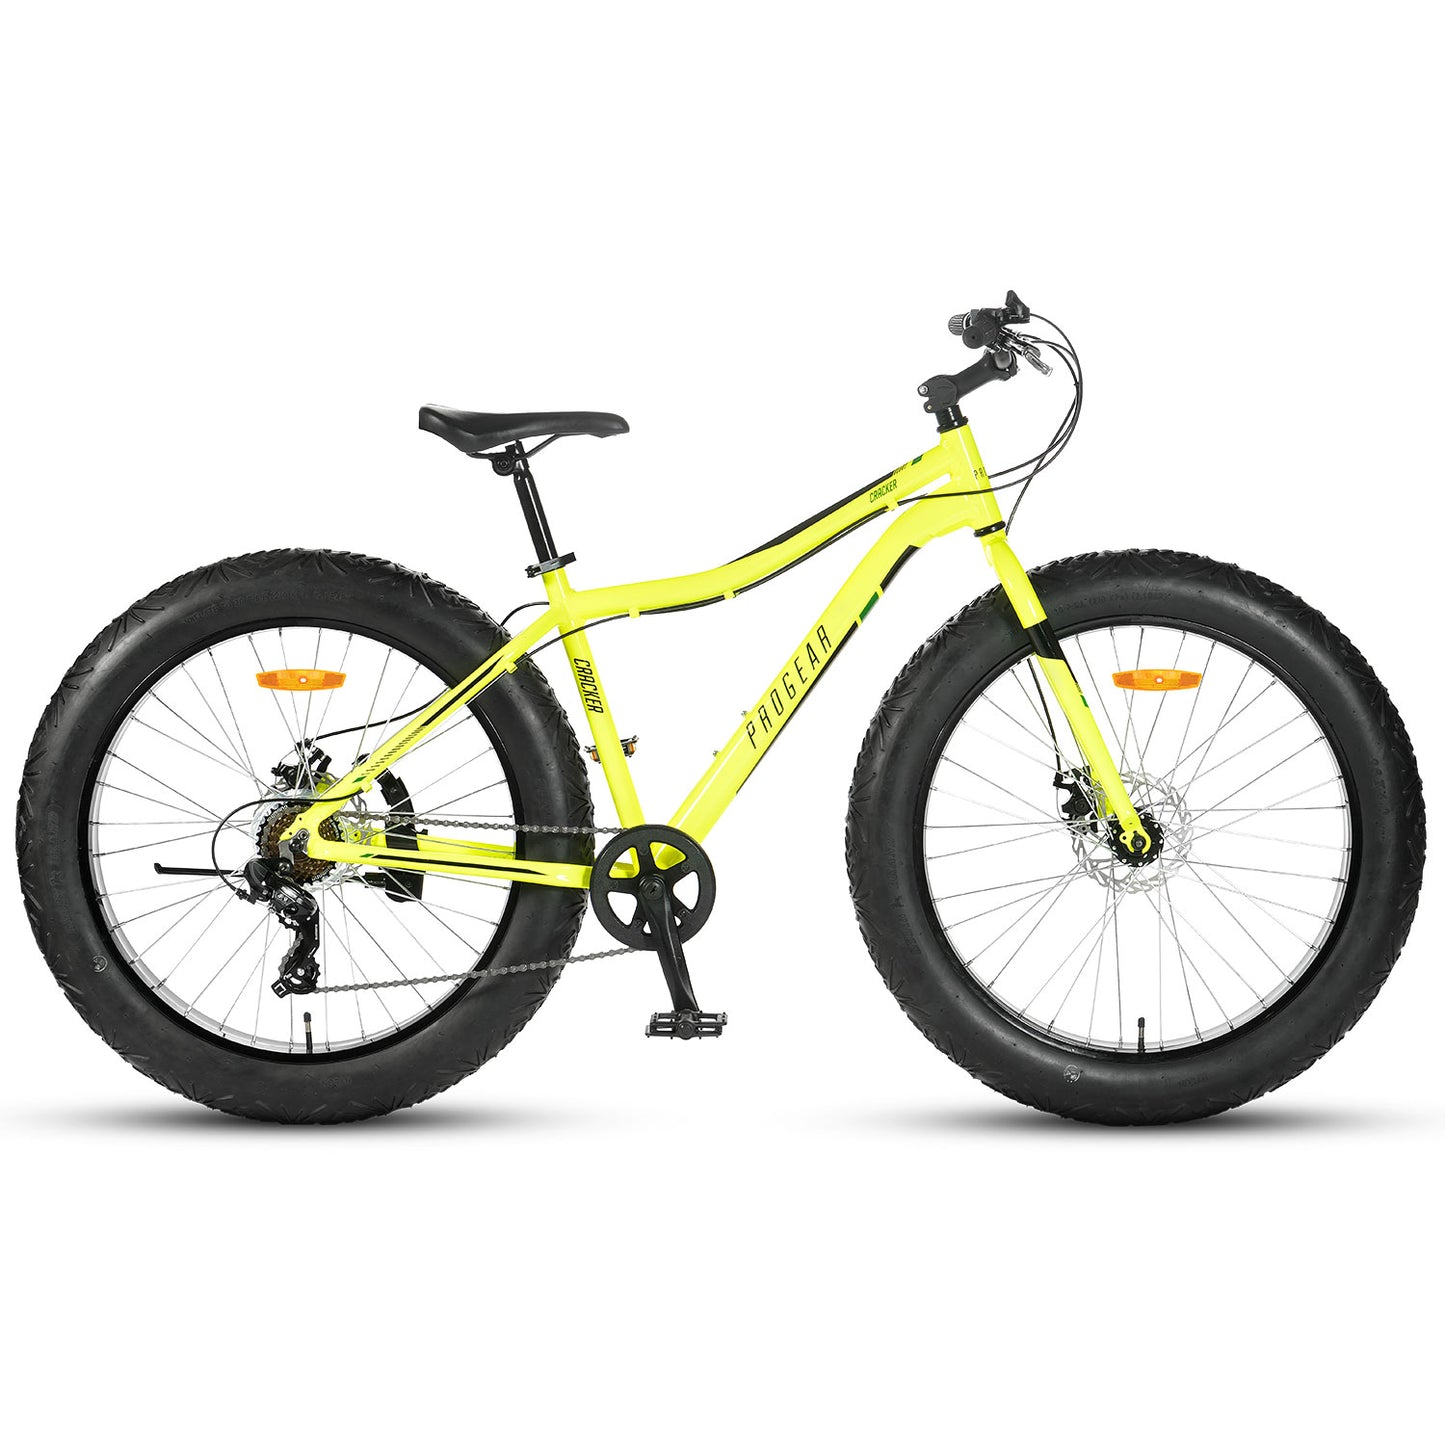 Progear Bikes Cracker 26 in Lime Green"